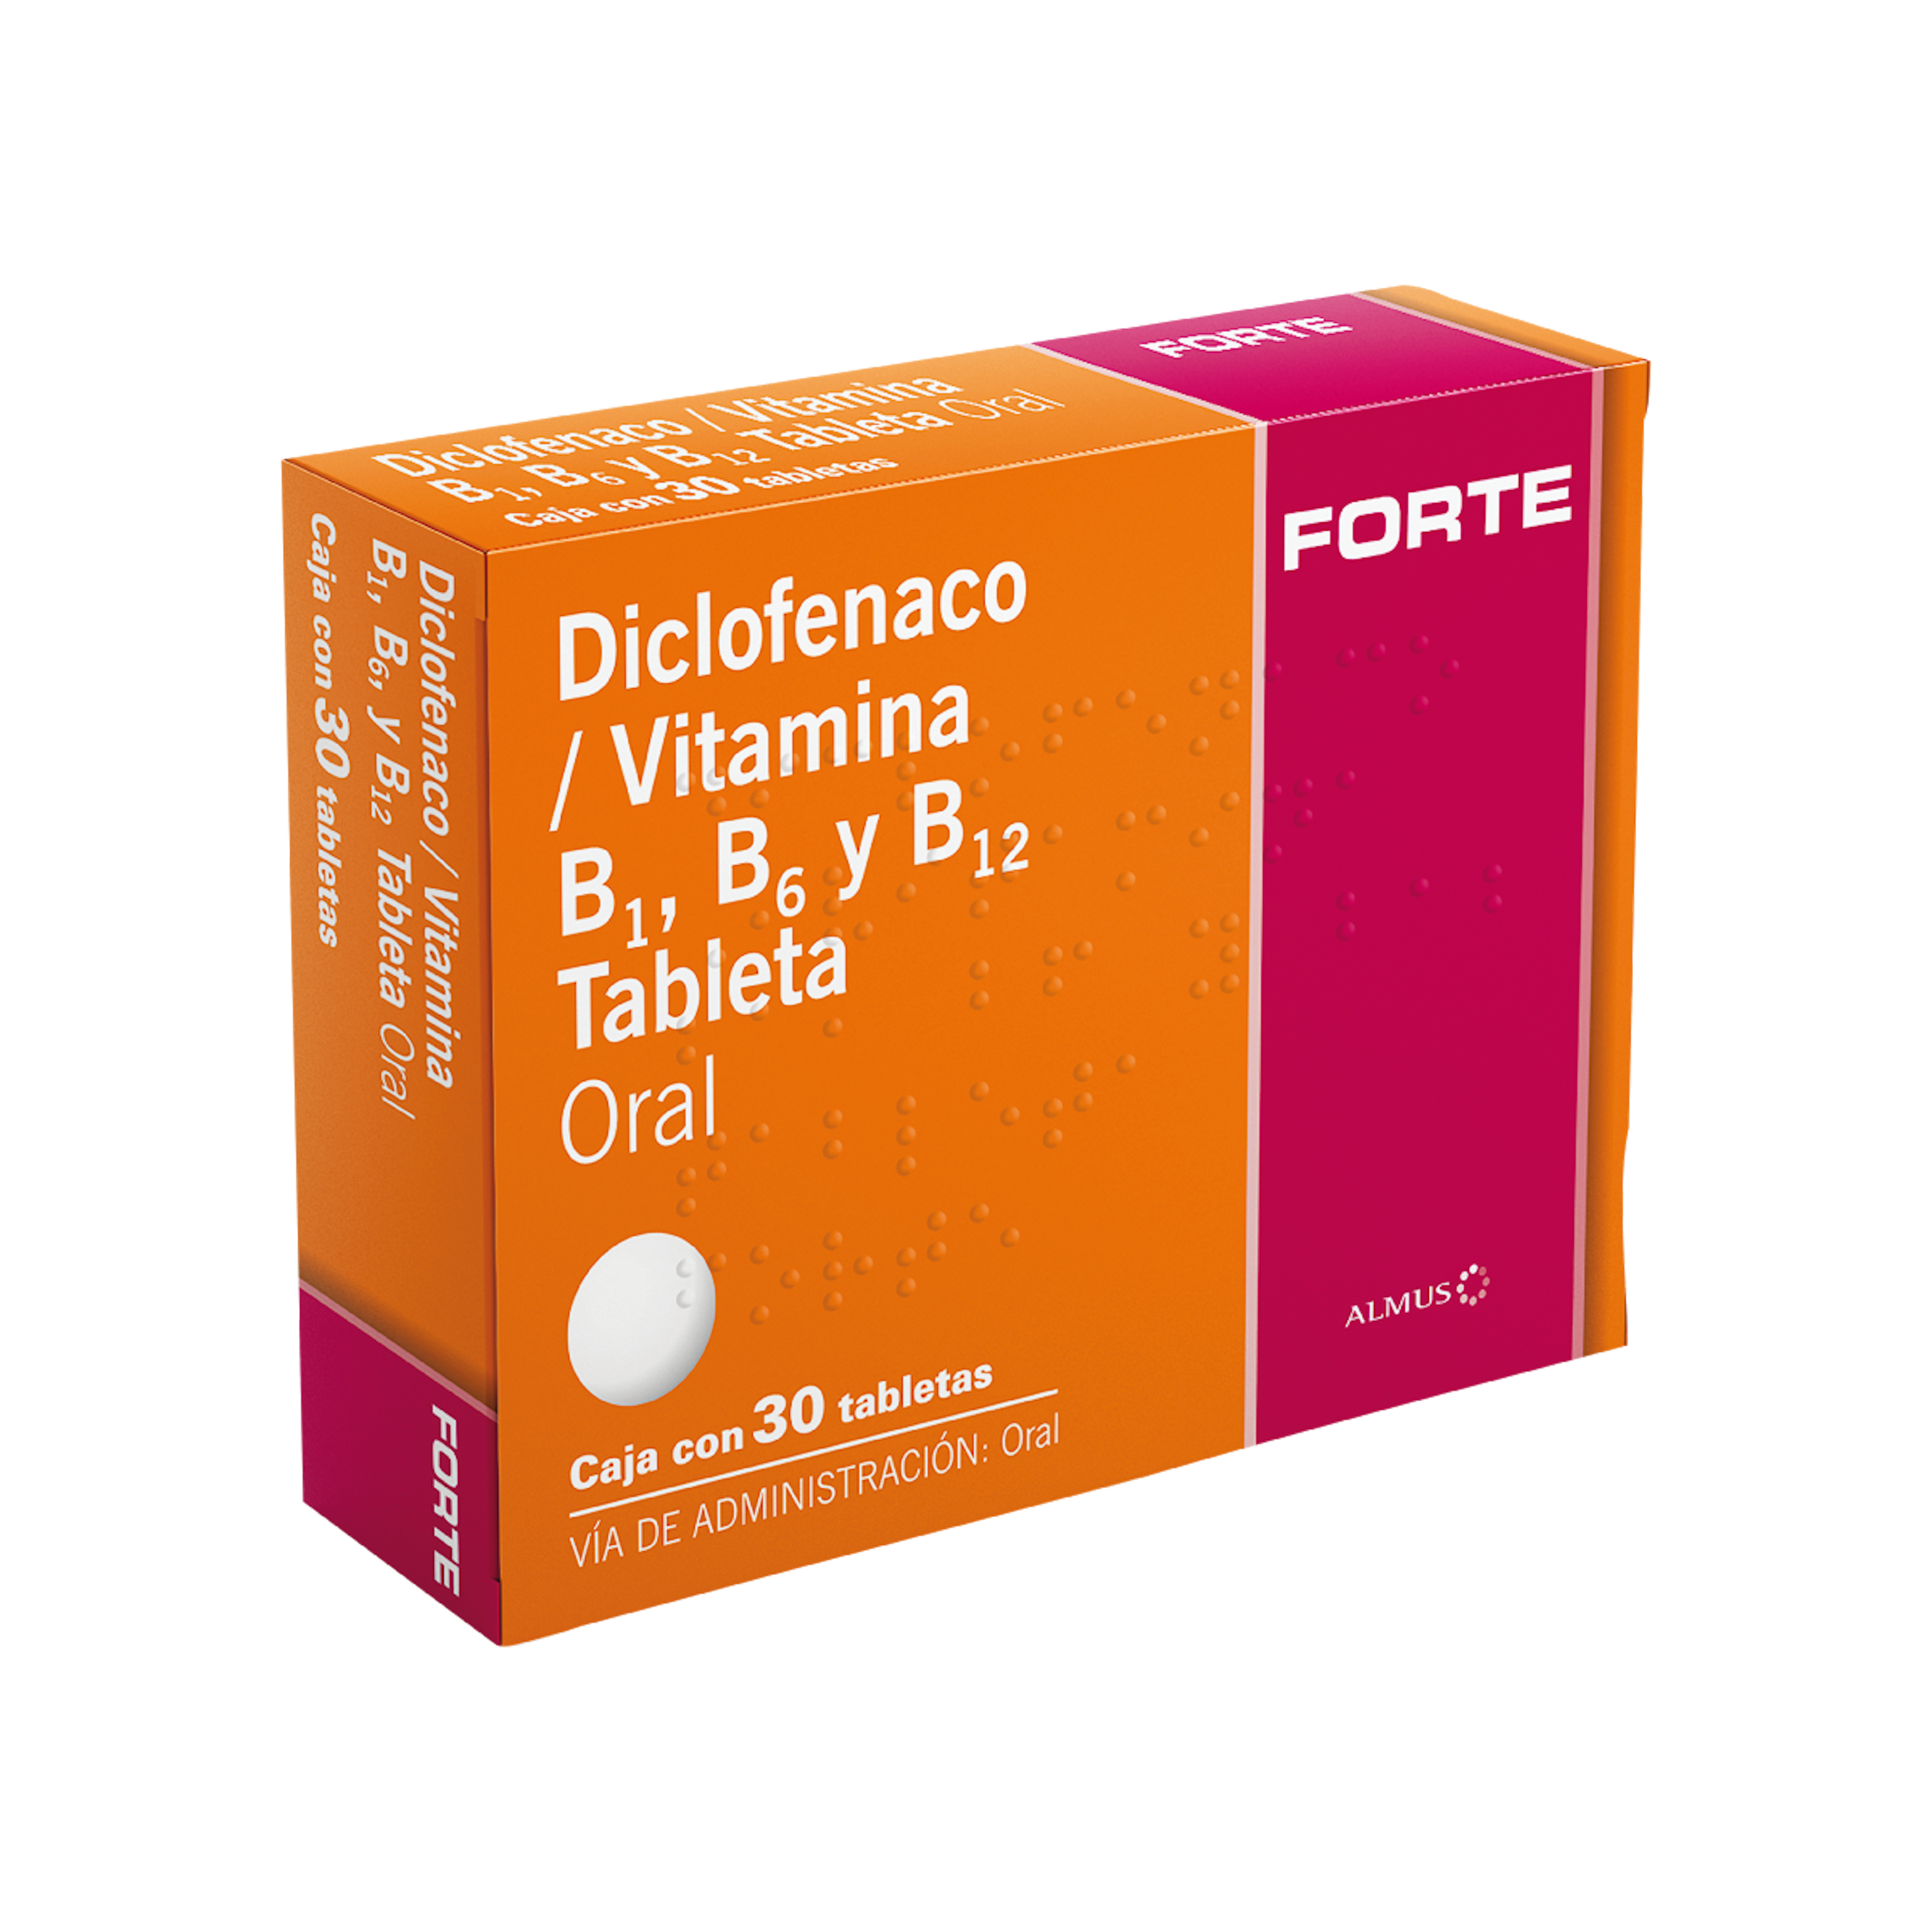 Diclofenaco/Complejo B Forte